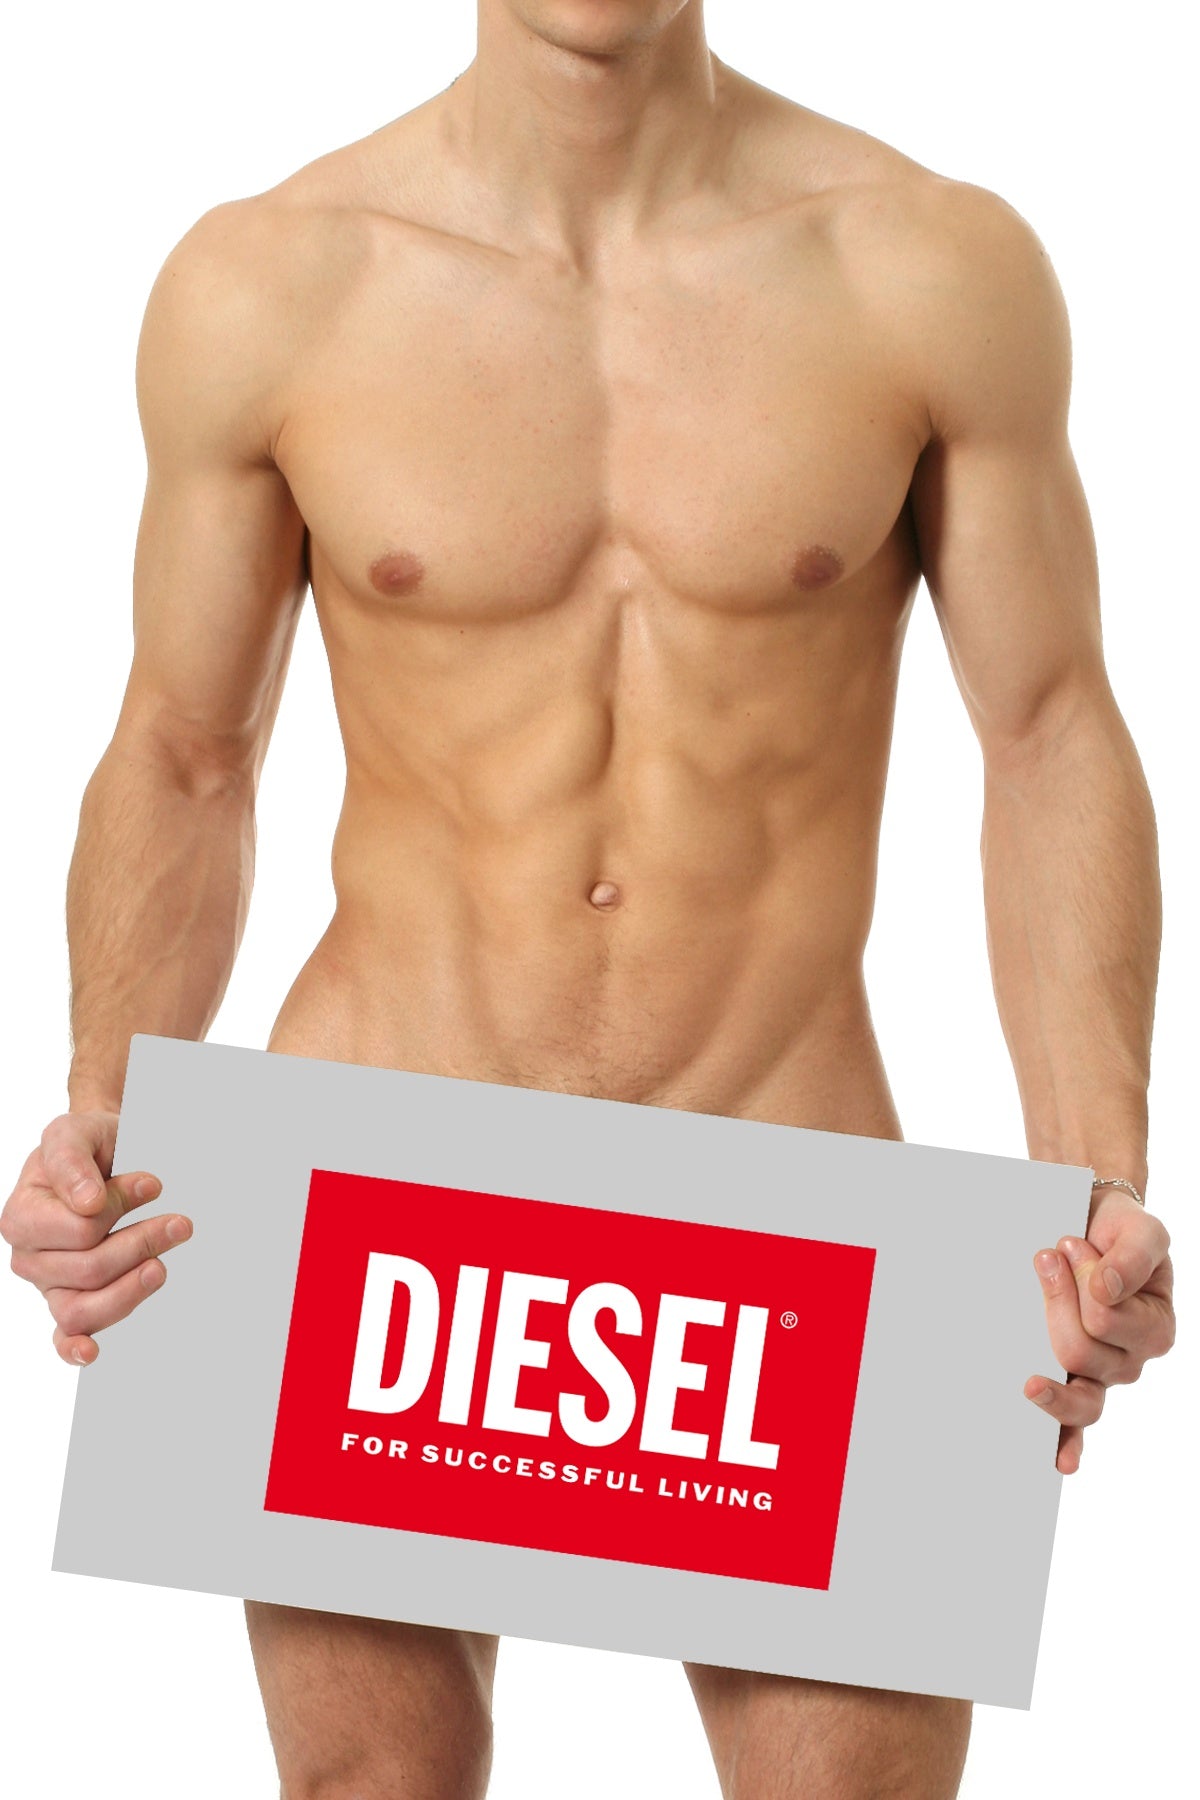 Diesel Mystery Item